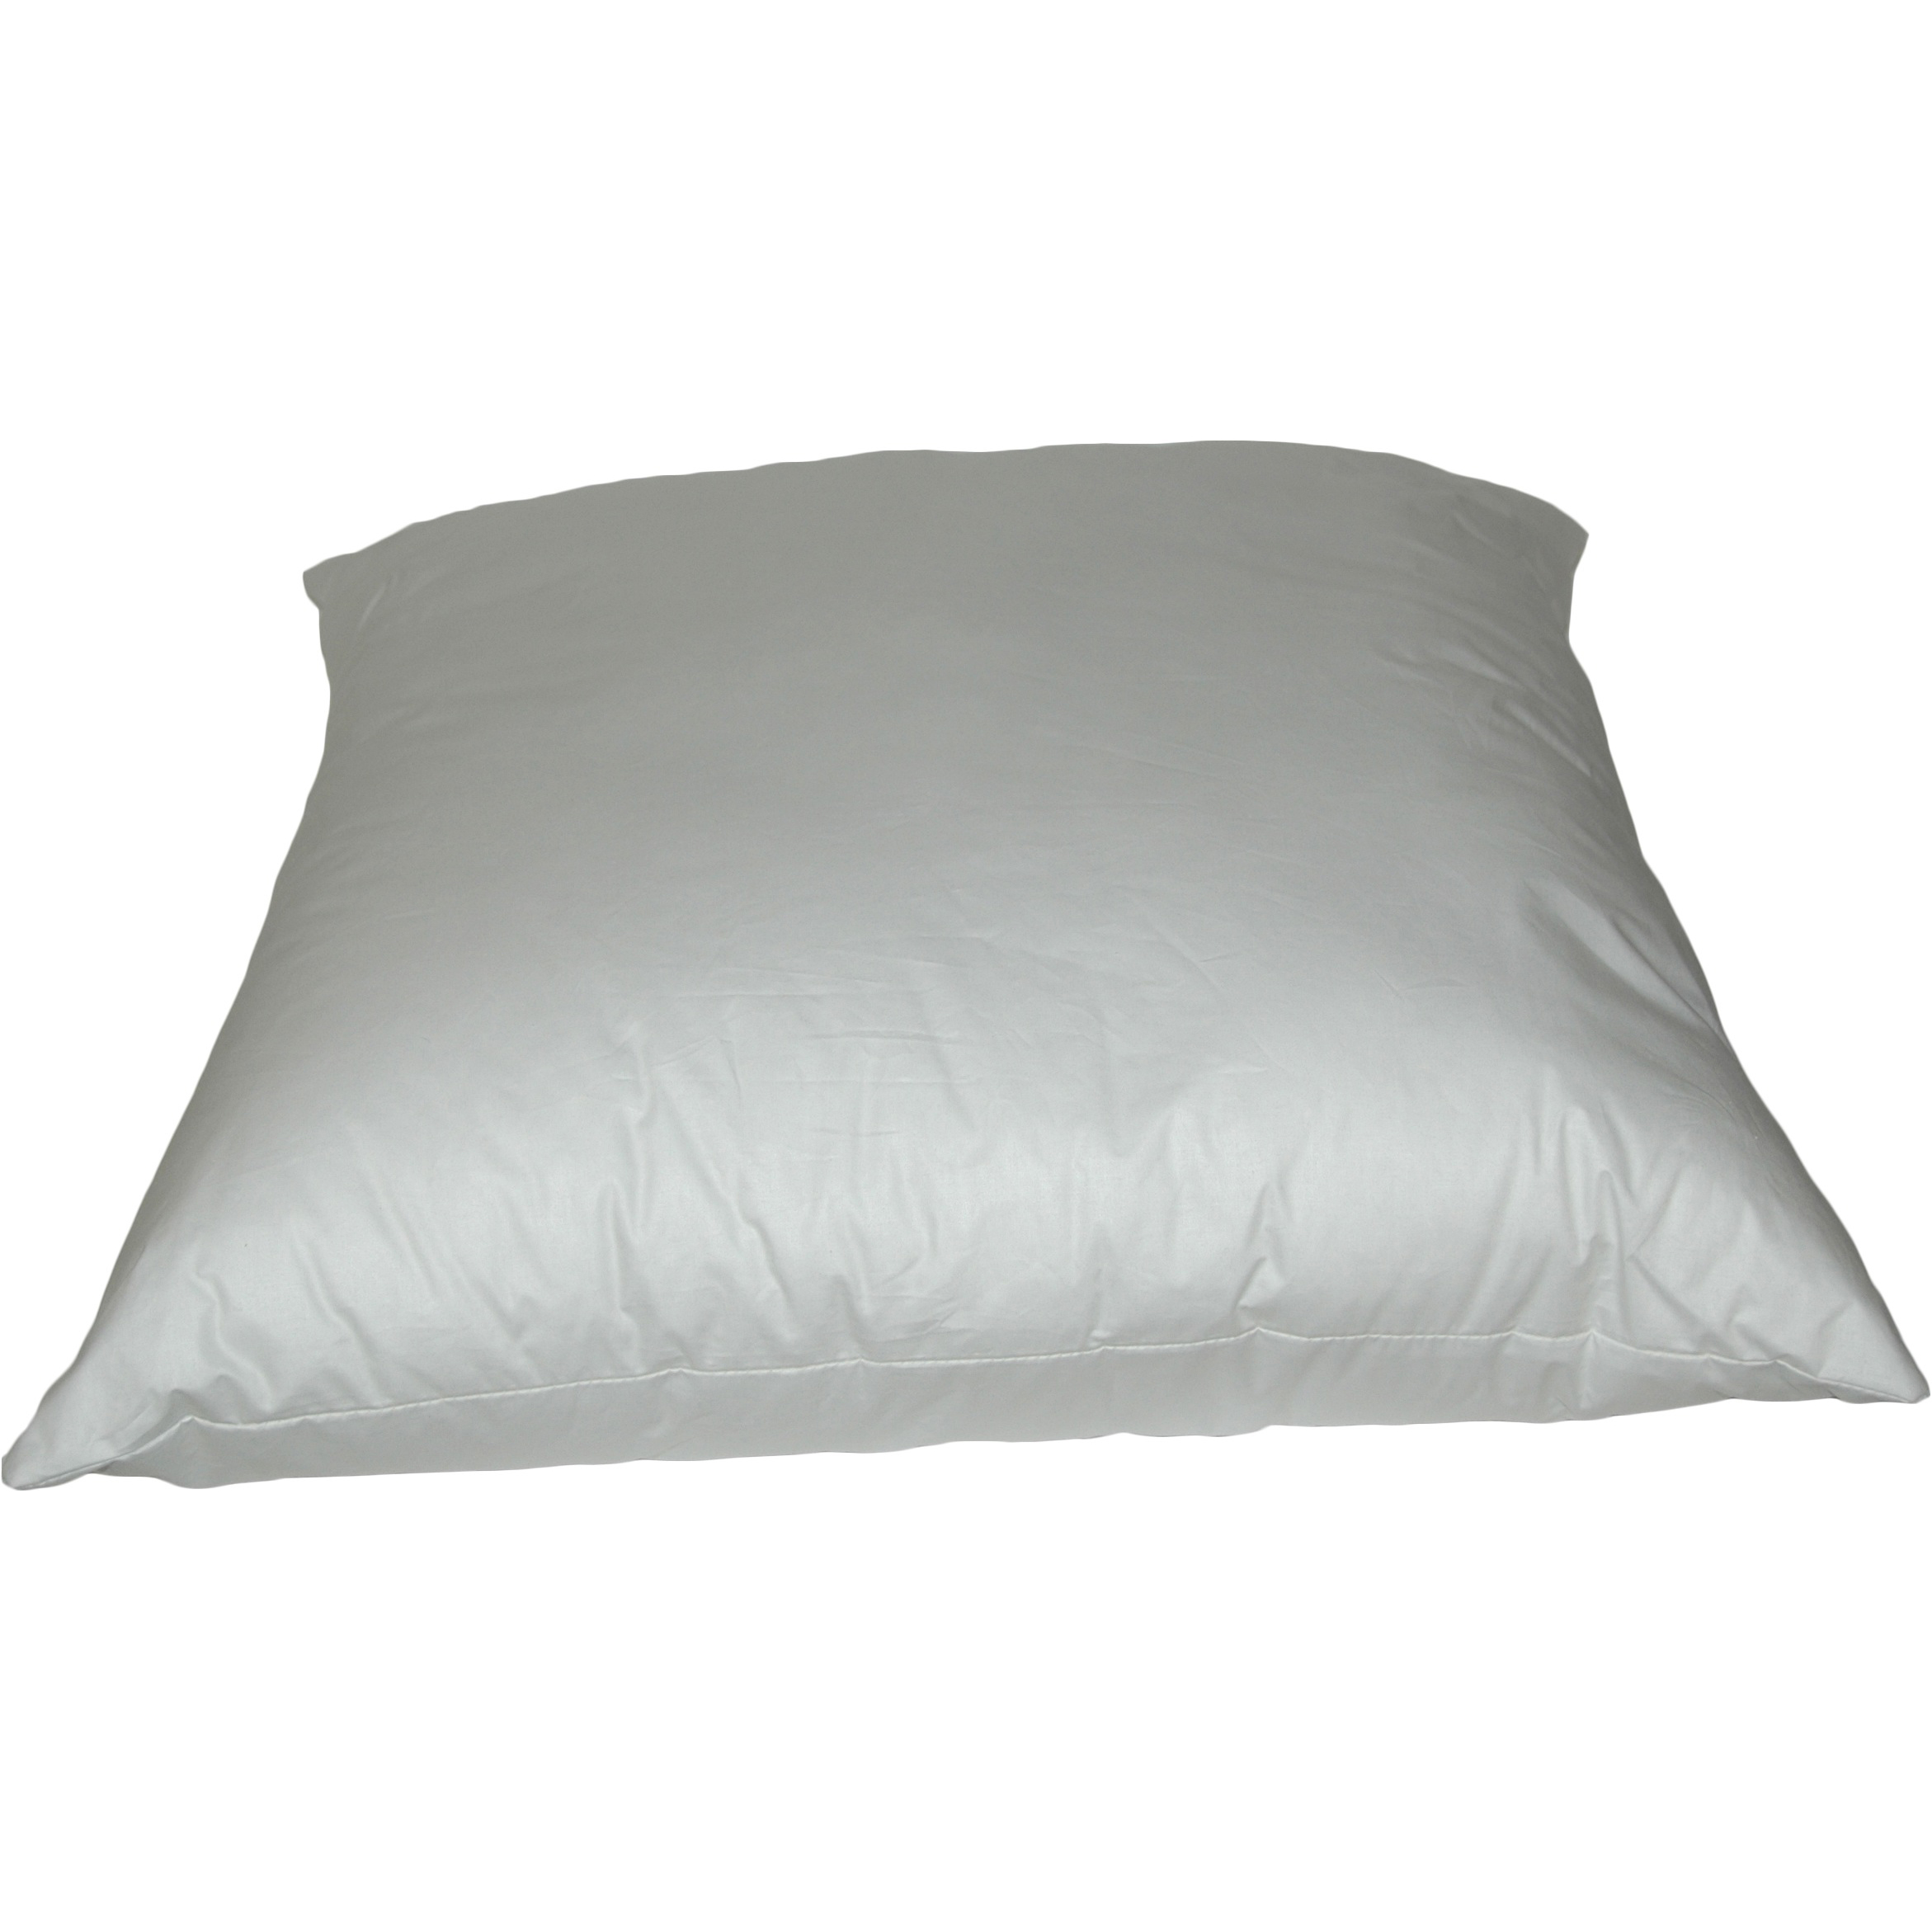 Rectangular K-Fiber Pillows 20x26 inch